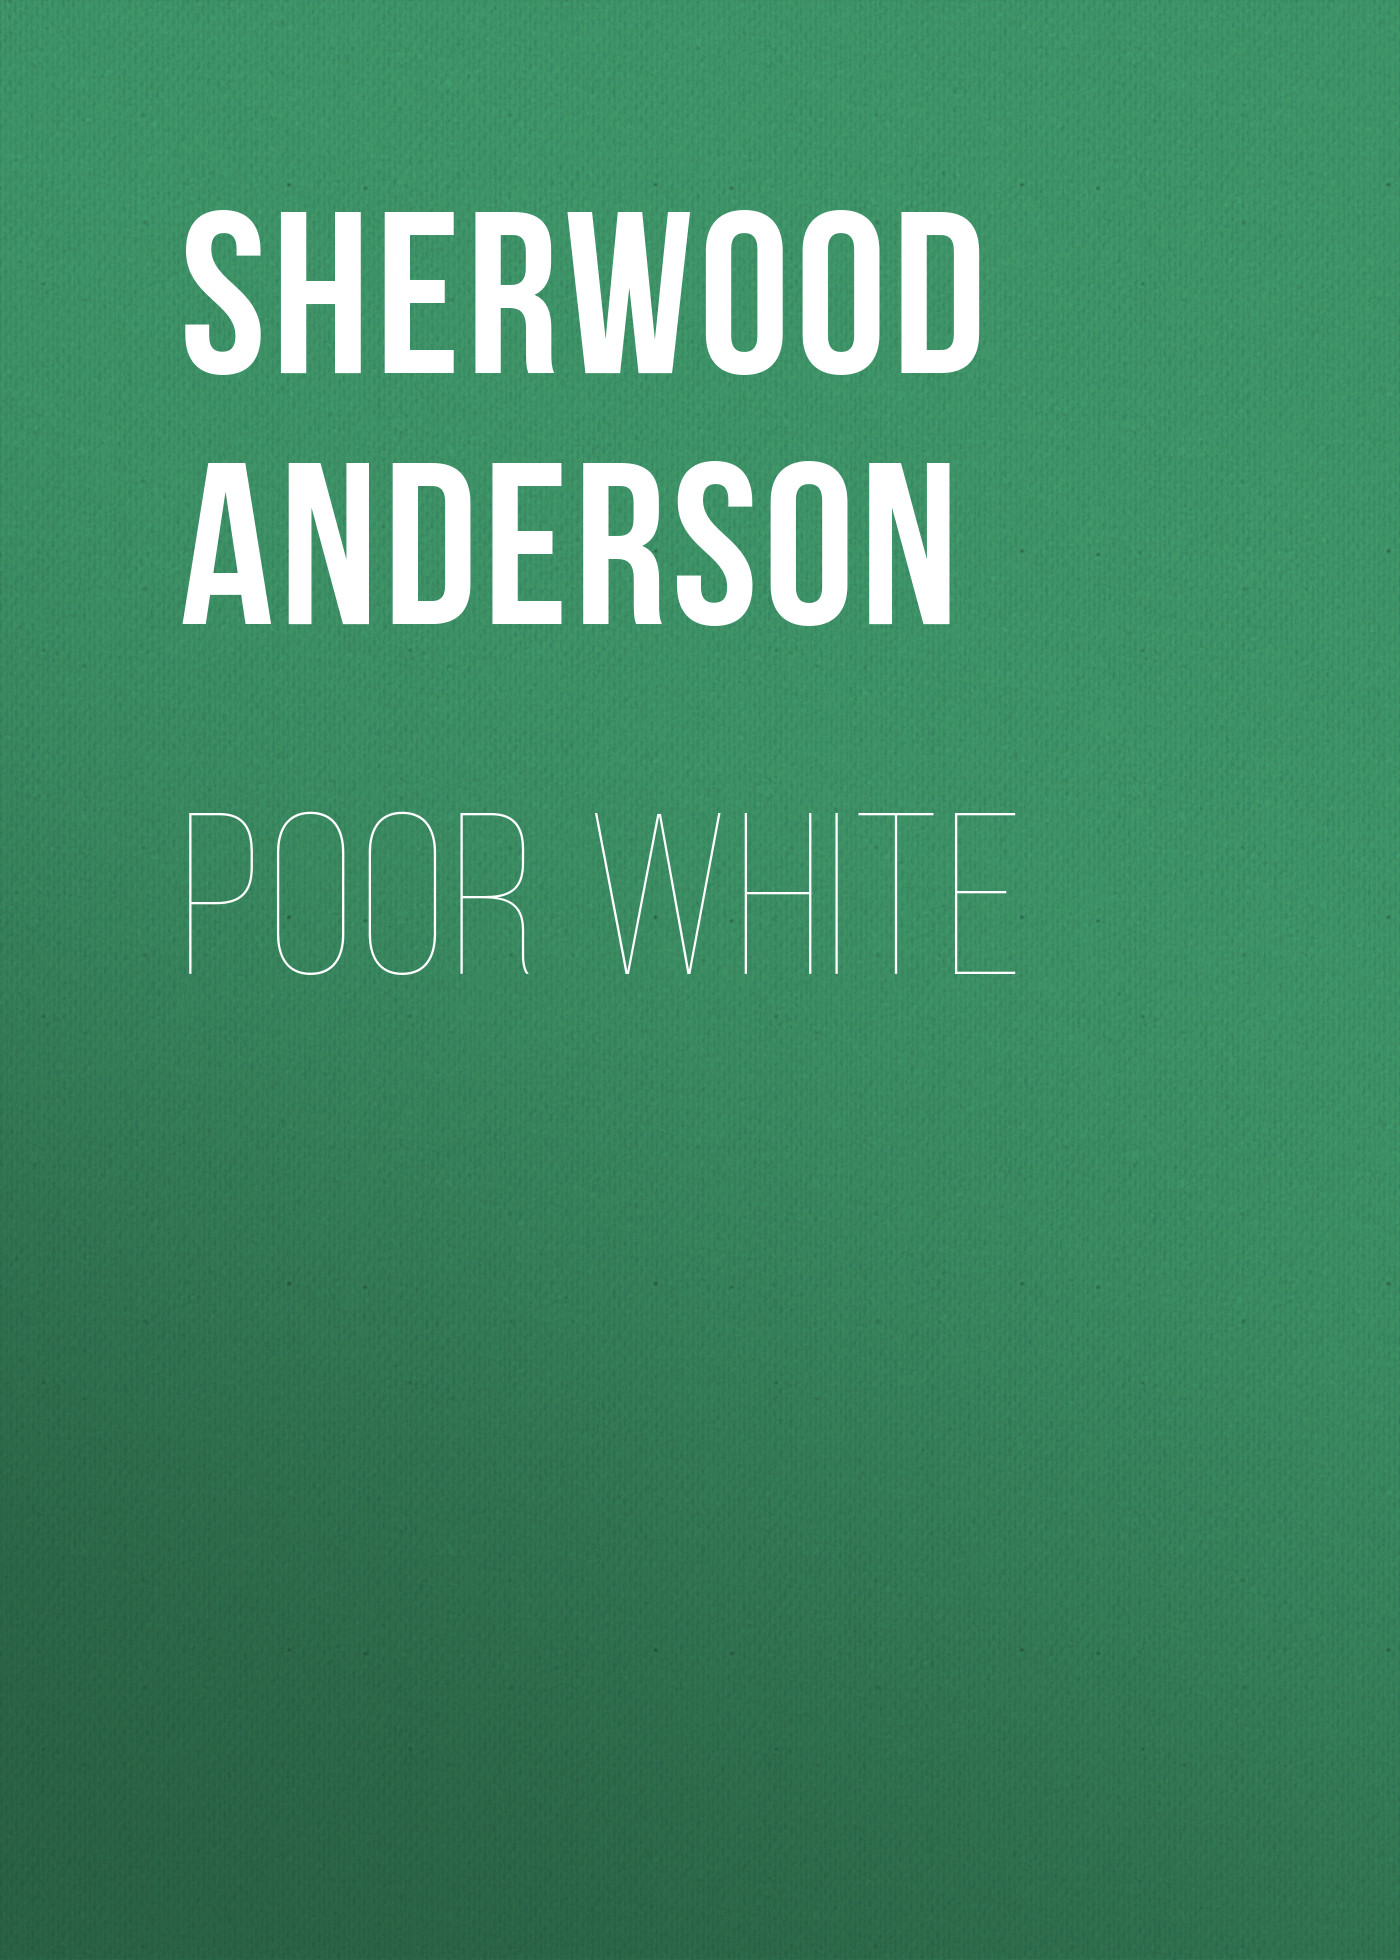 Книга Poor White из серии , созданная Sherwood Anderson, может относится к жанру Историческая фантастика, Литература 20 века, Зарубежная старинная литература, Зарубежная классика, Исторические приключения. Стоимость электронной книги Poor White с идентификатором 36095421 составляет 0 руб.